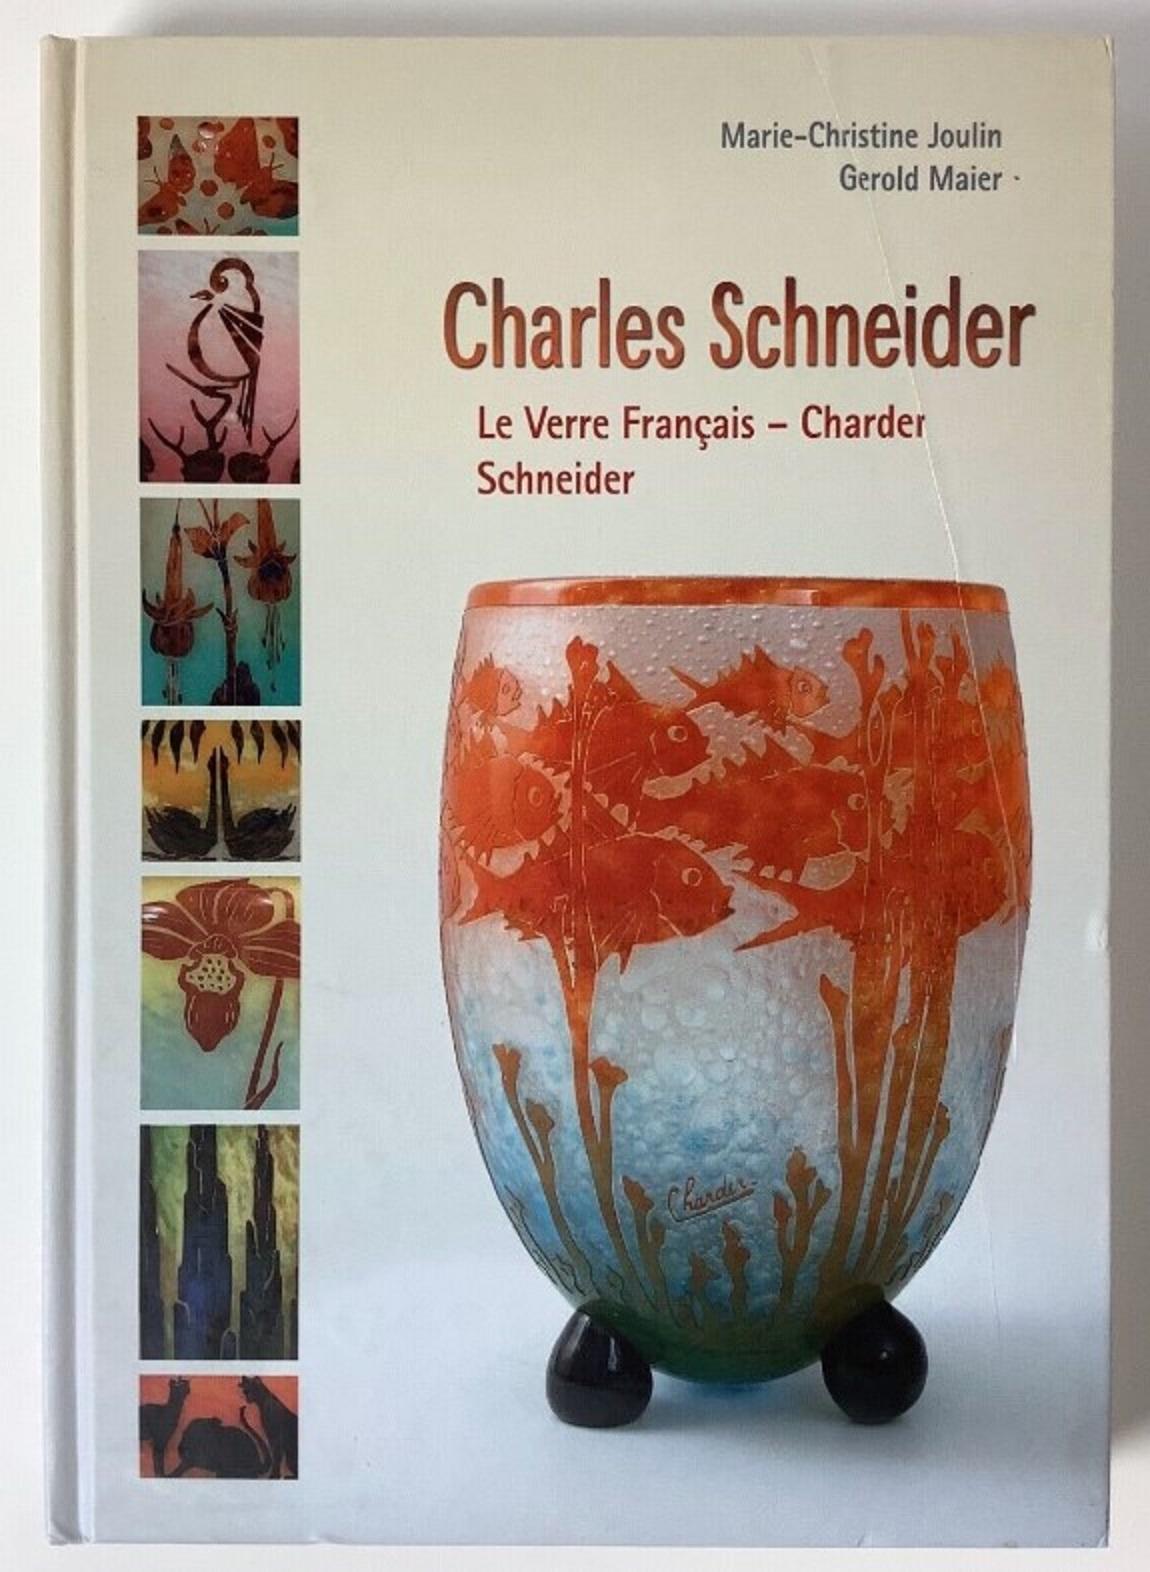 Signe : Schneider 
Schneider
Charles Schneider (1881-1953) a étudié l'art dans deux des plus prestigieuses écoles d'art françaises. D'abord à l'Ecole des Beaux-Arts de Nancy, puis à l'Ecole des Beaux-Arts de Paris. Pendant son séjour à Nancy,